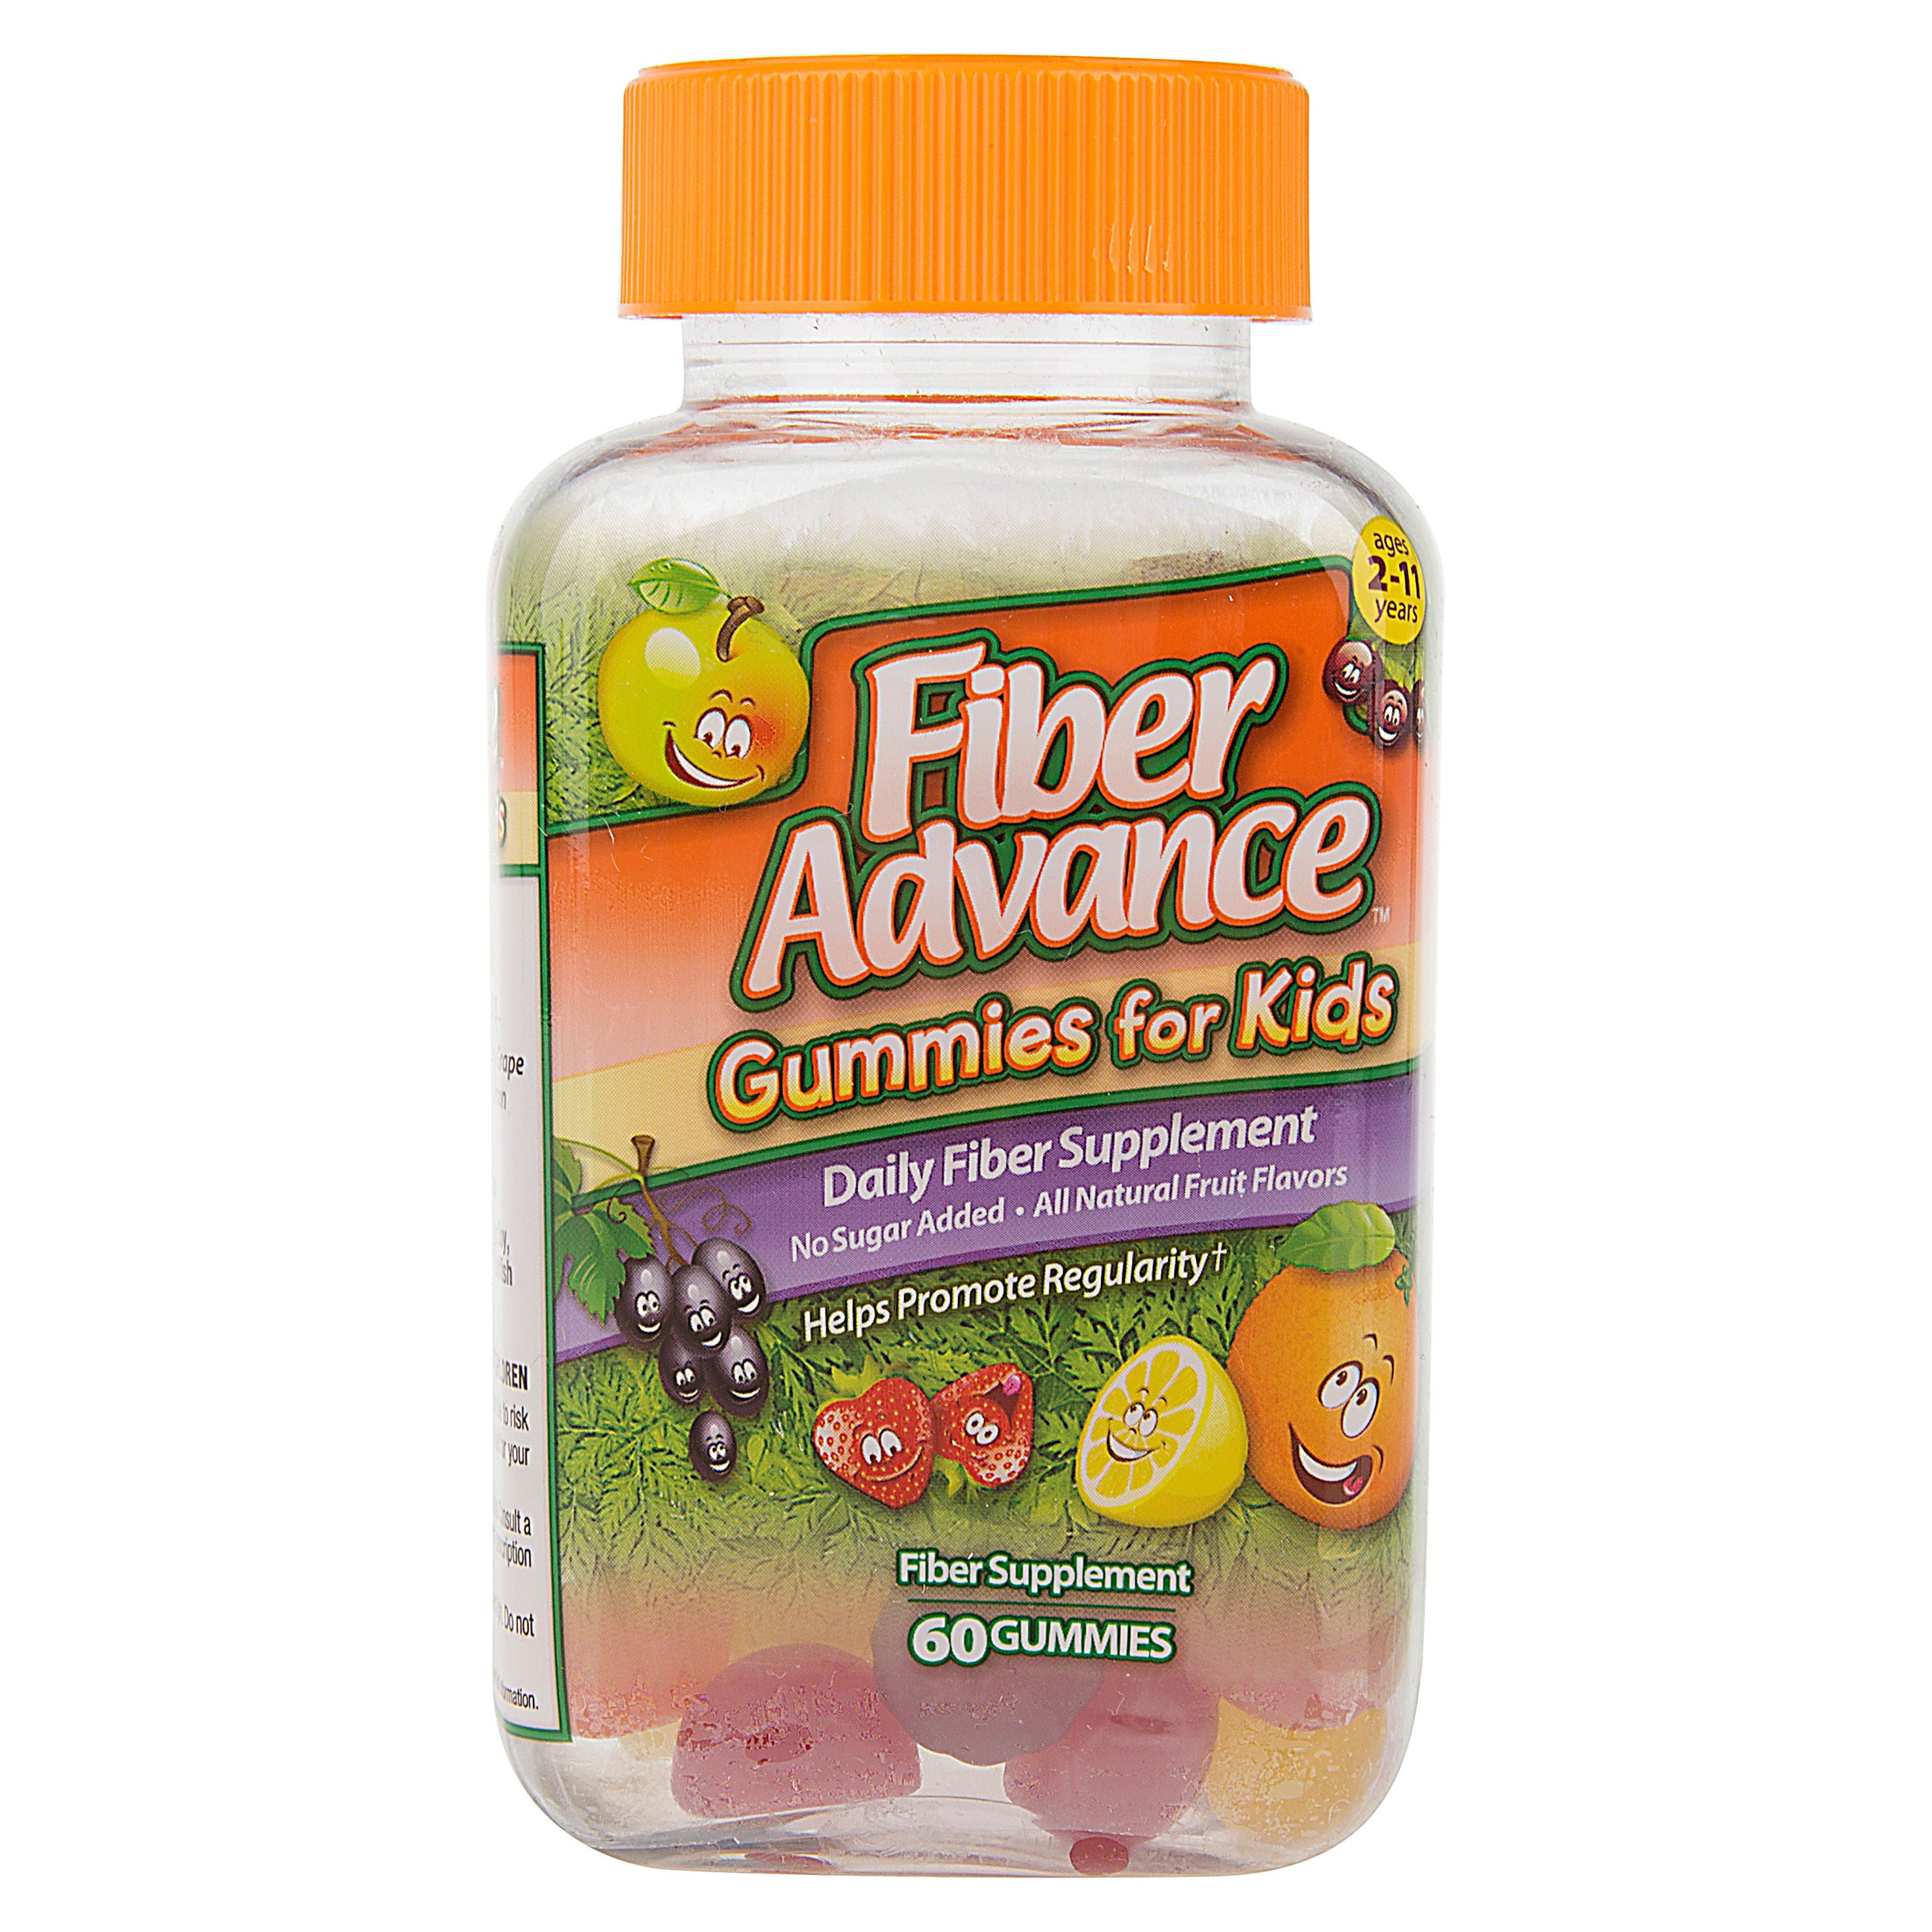 fiberadvance-gummies-for-kids-digestive-fiber-supplement-gummies-60